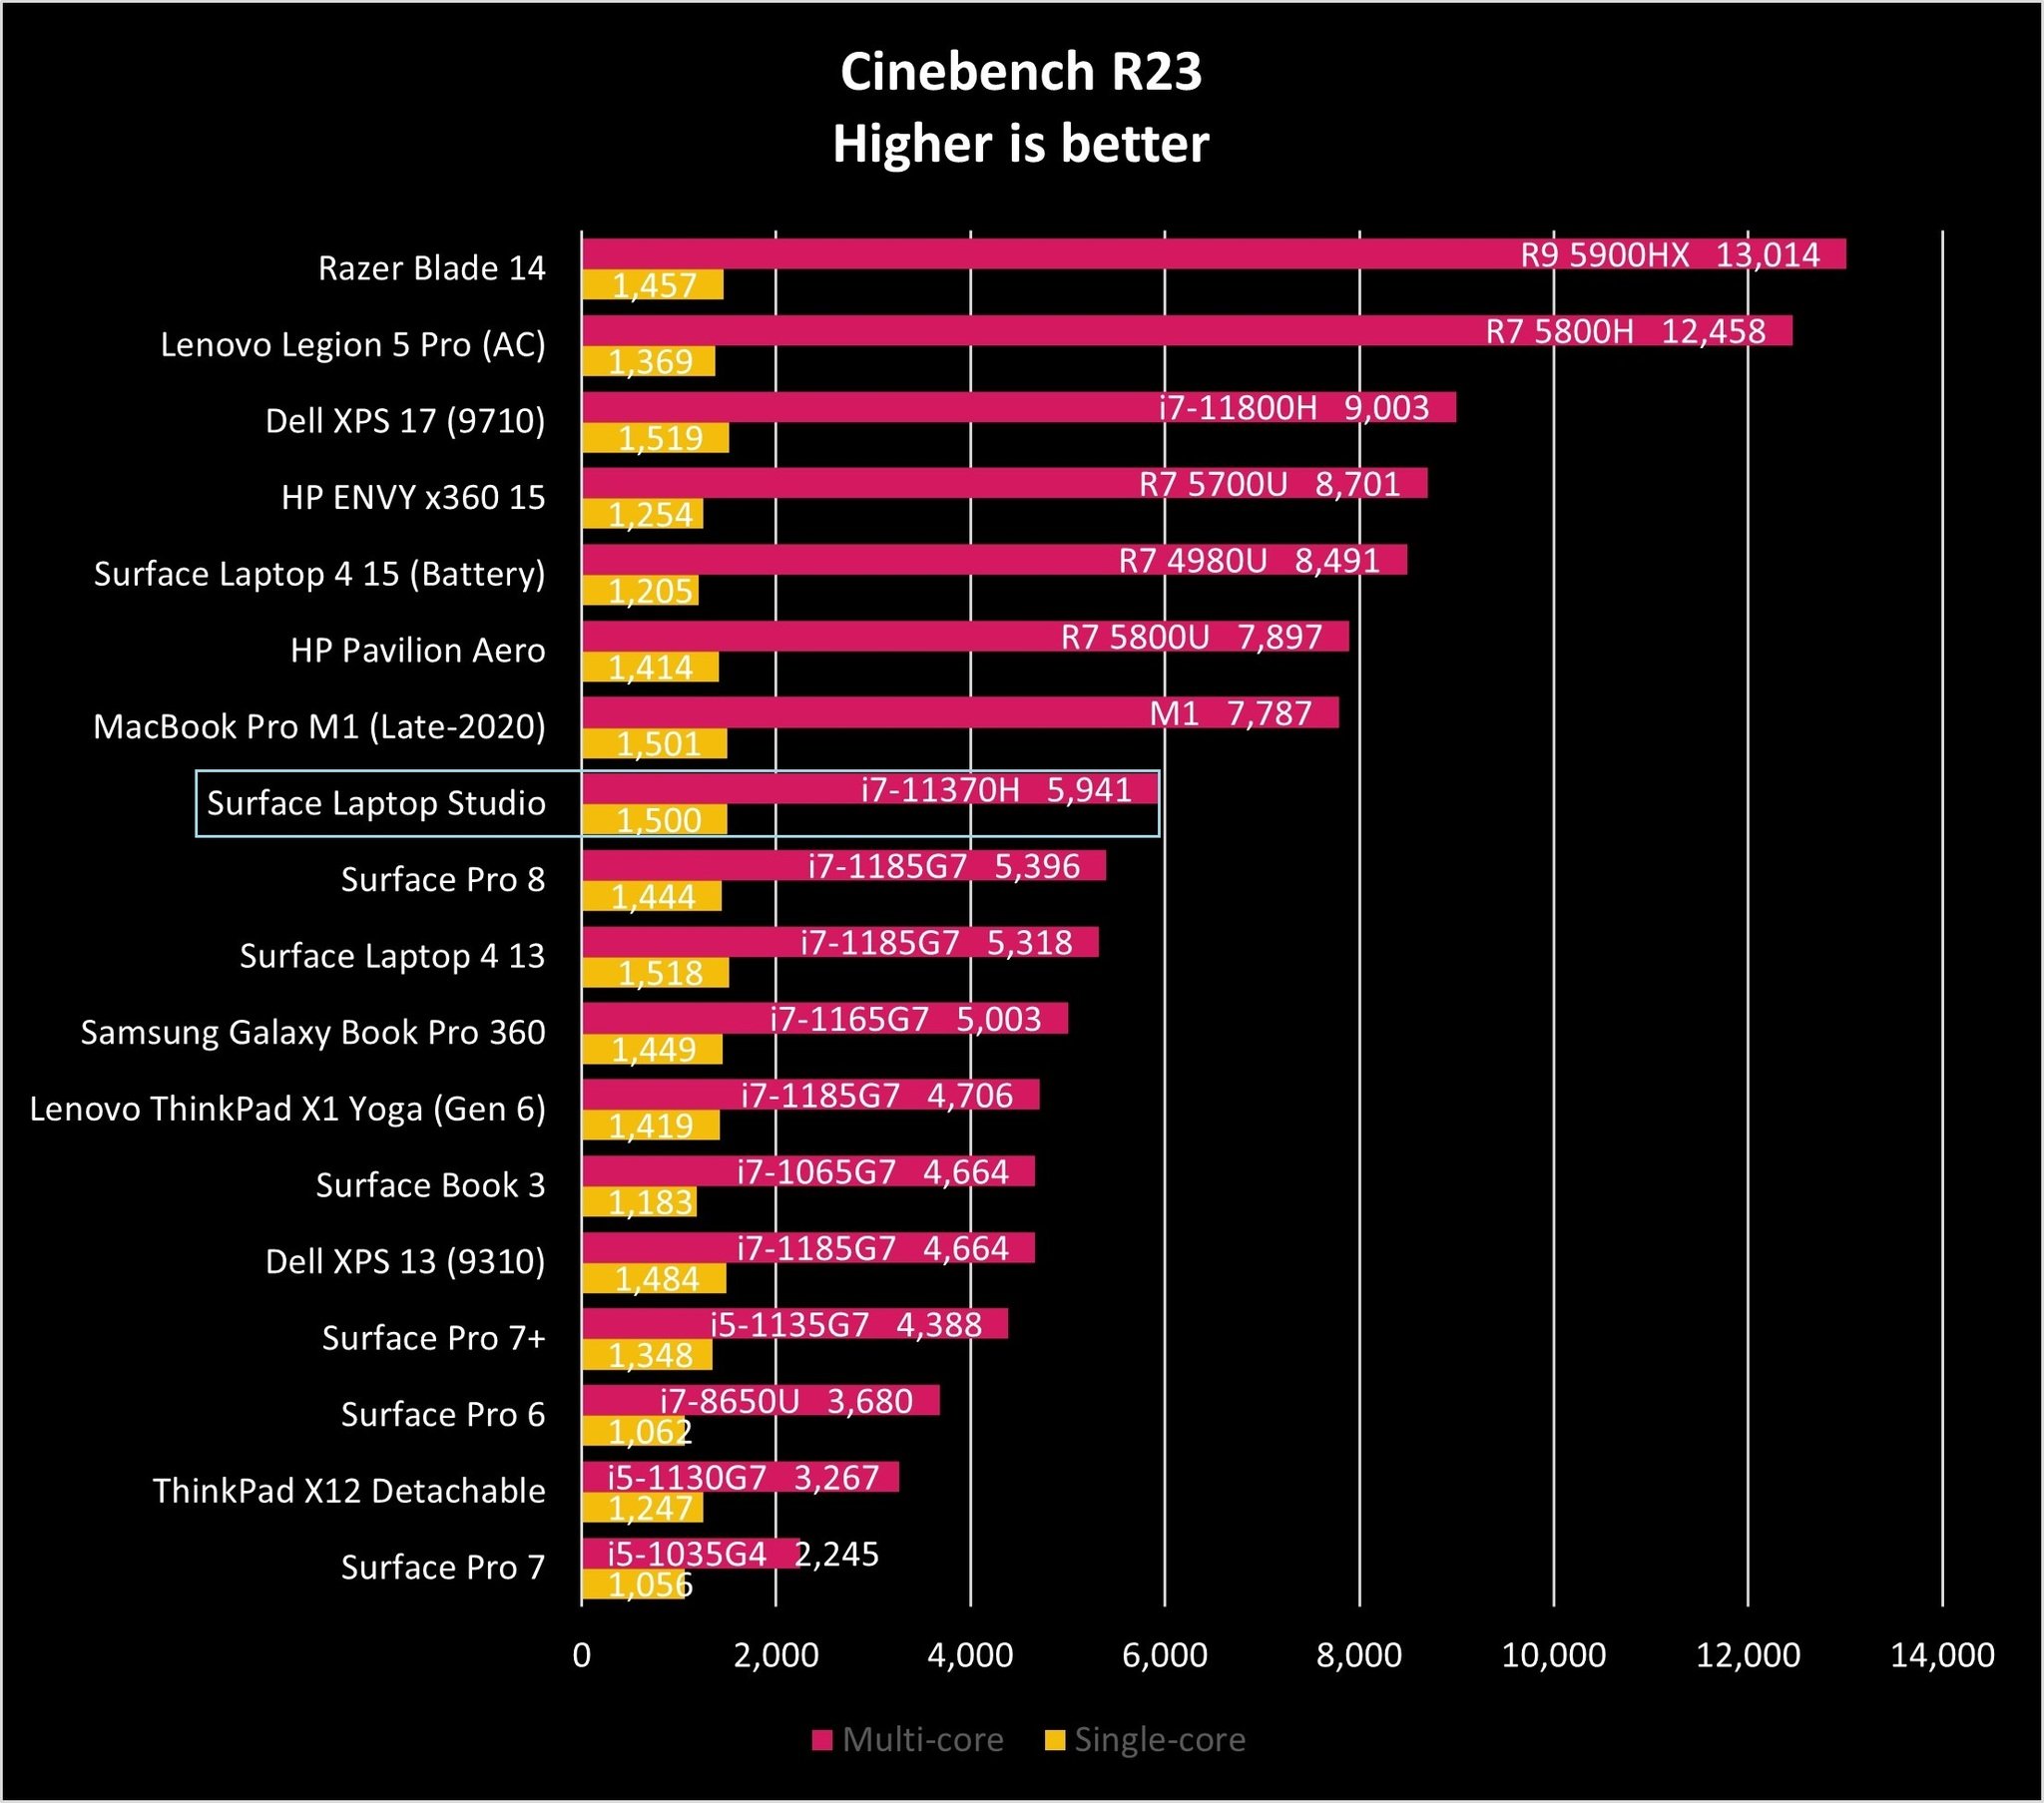 Surface Laptop Studio Ciner23 Graph Comparison